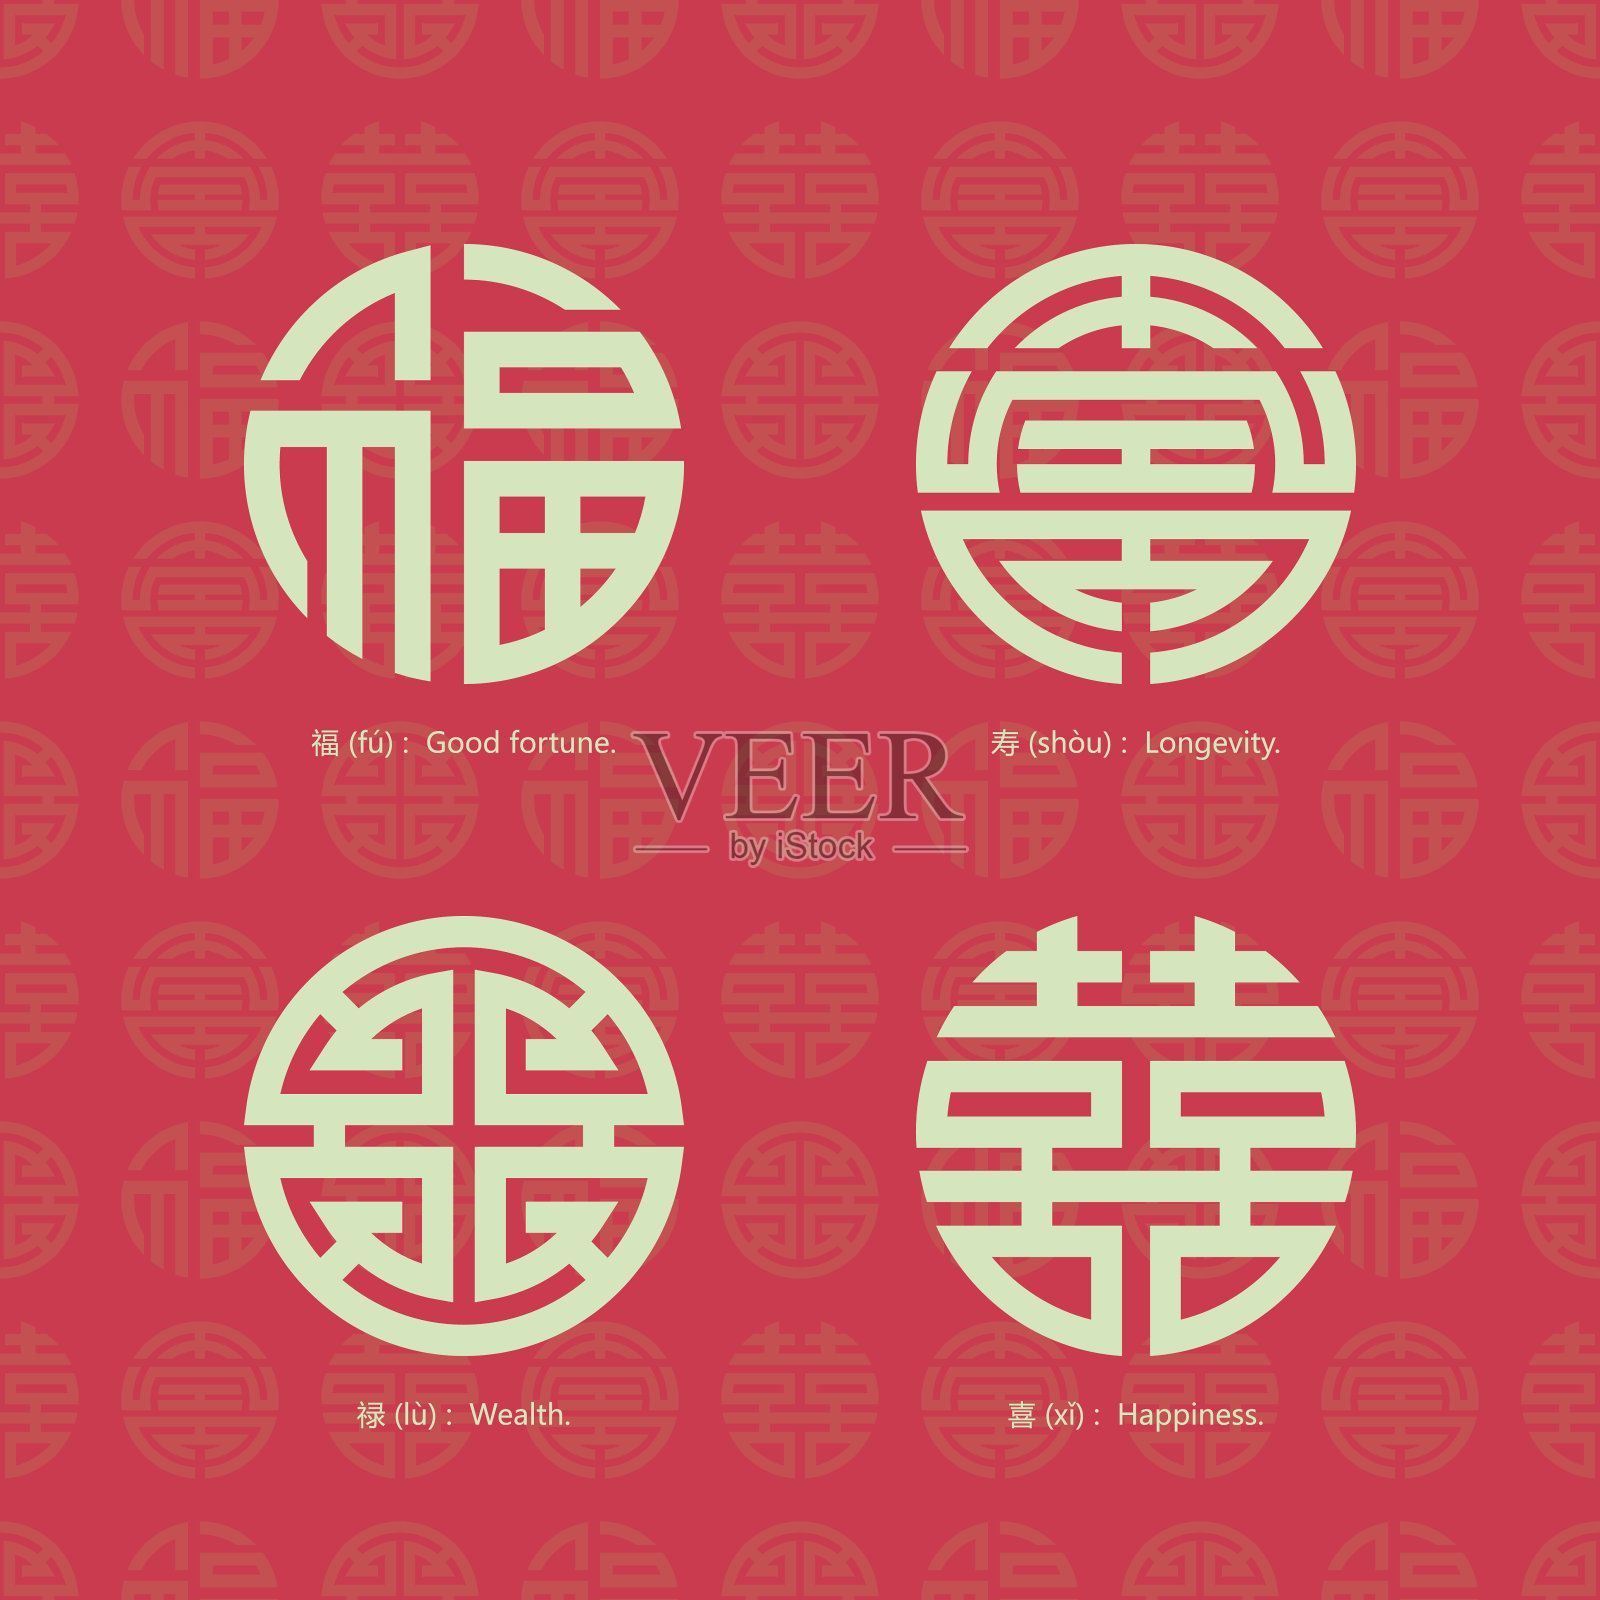 中国传统吉祥符号与背景无缝衔接插画图片素材